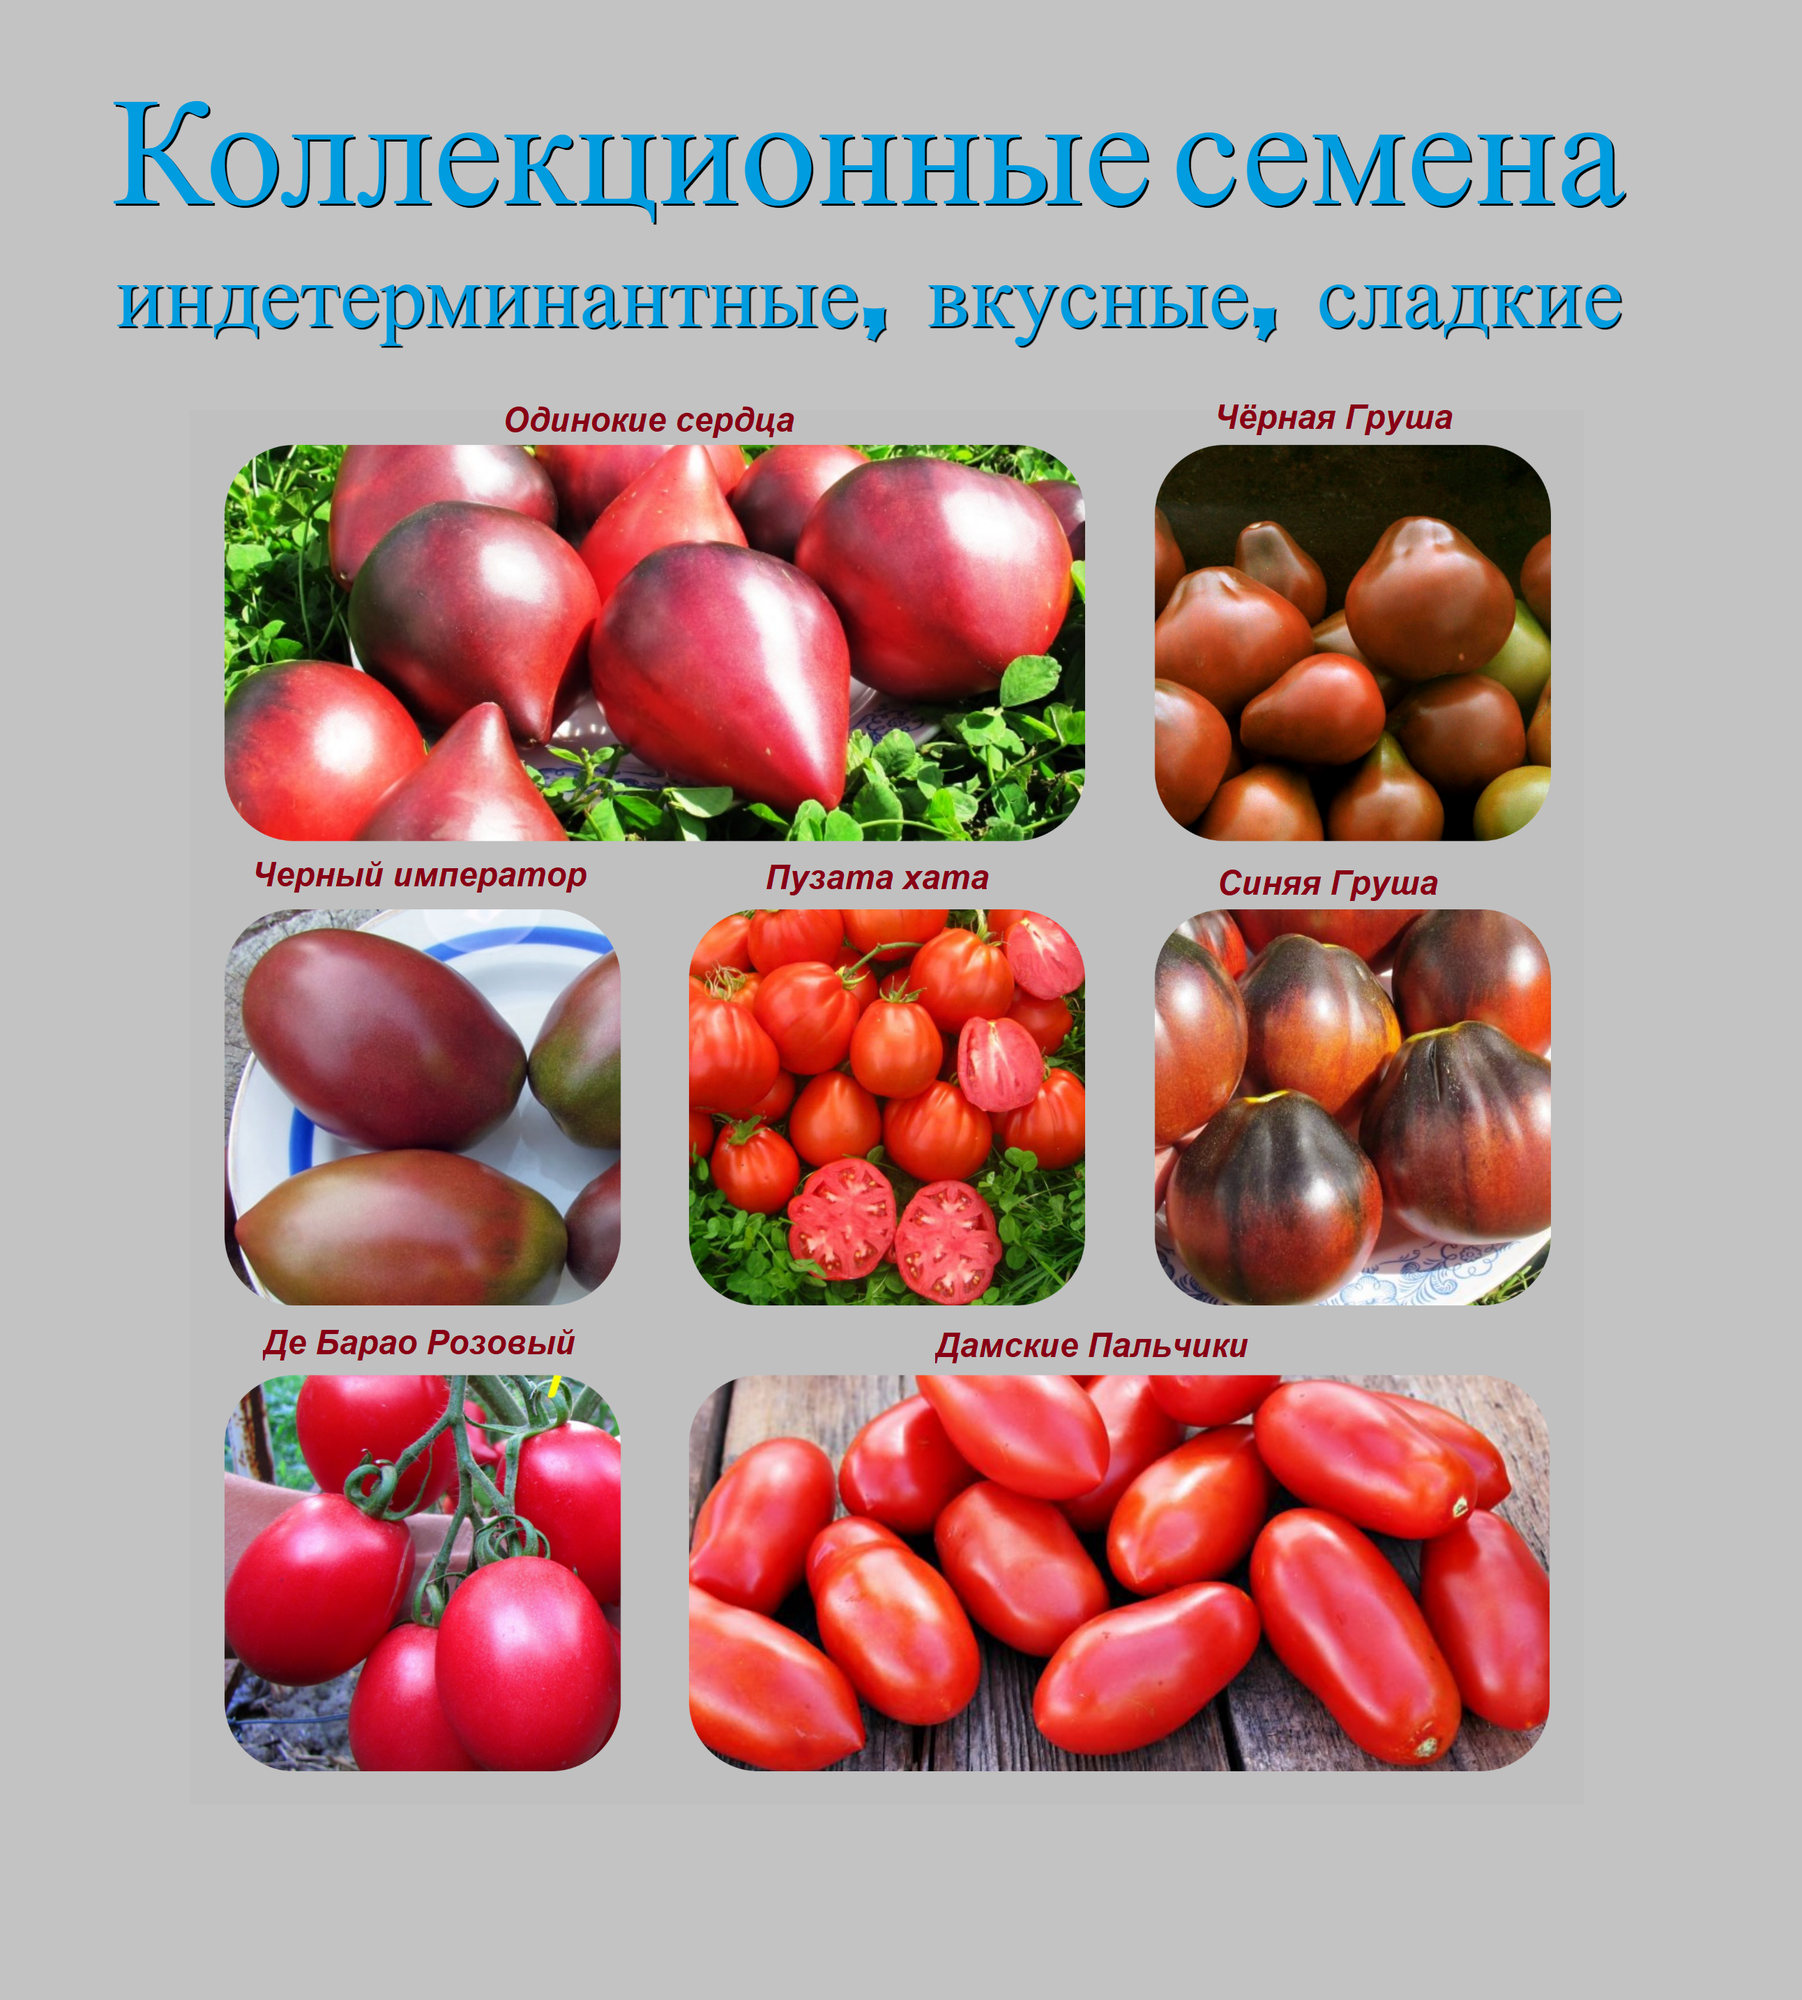 Набор коллекционных семян индетерминантных томатов